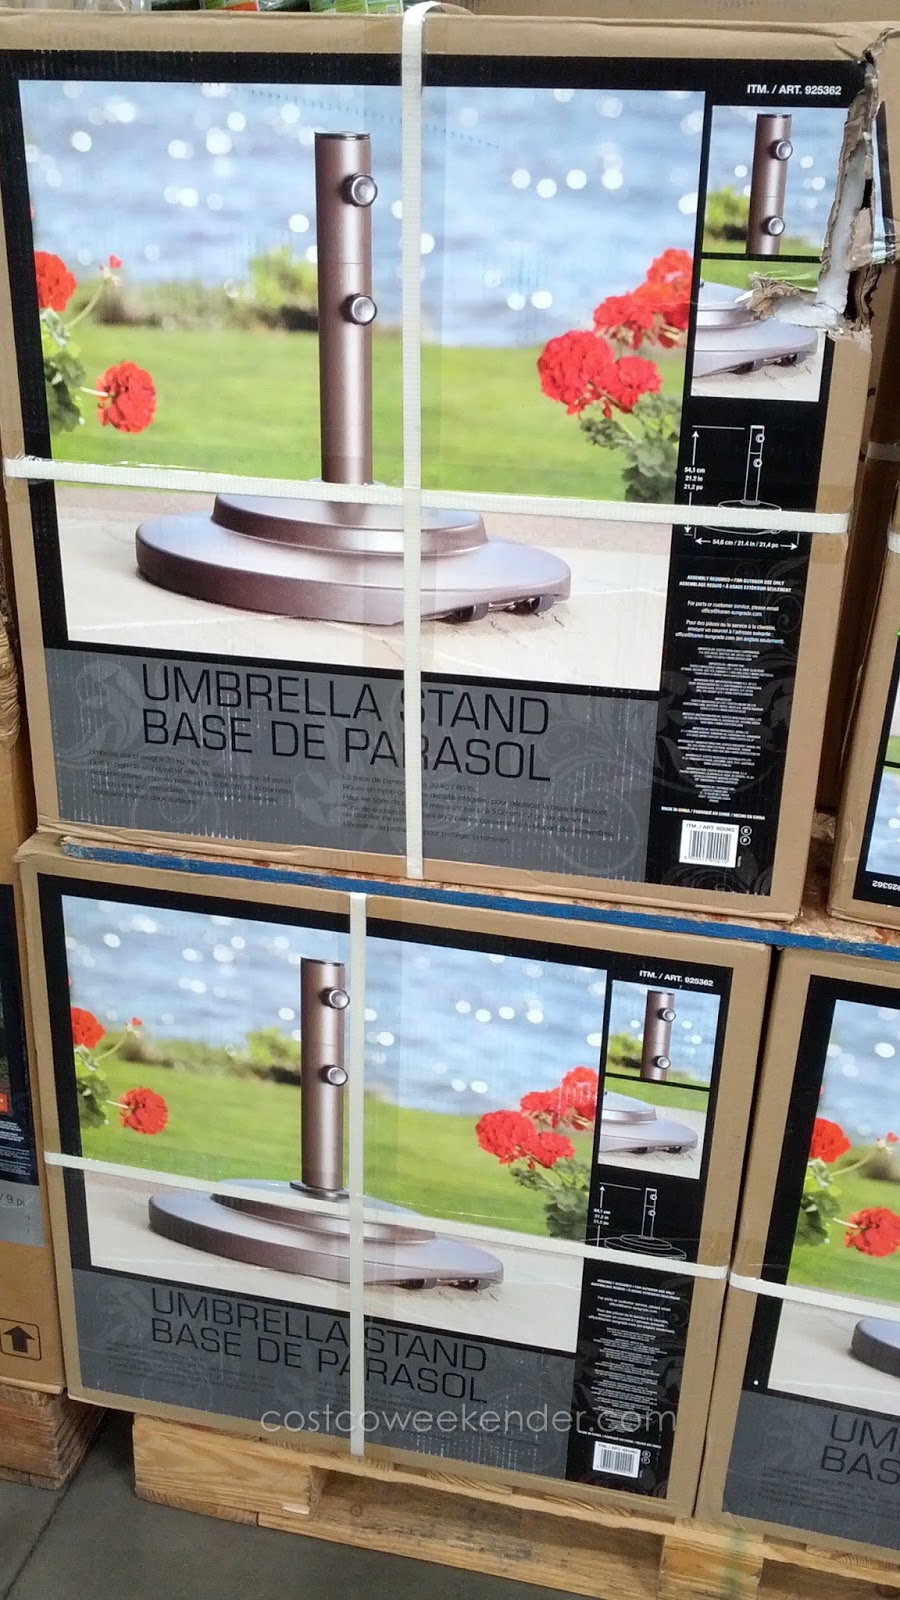 Sungrade Umbrella Stand Costco Weekender